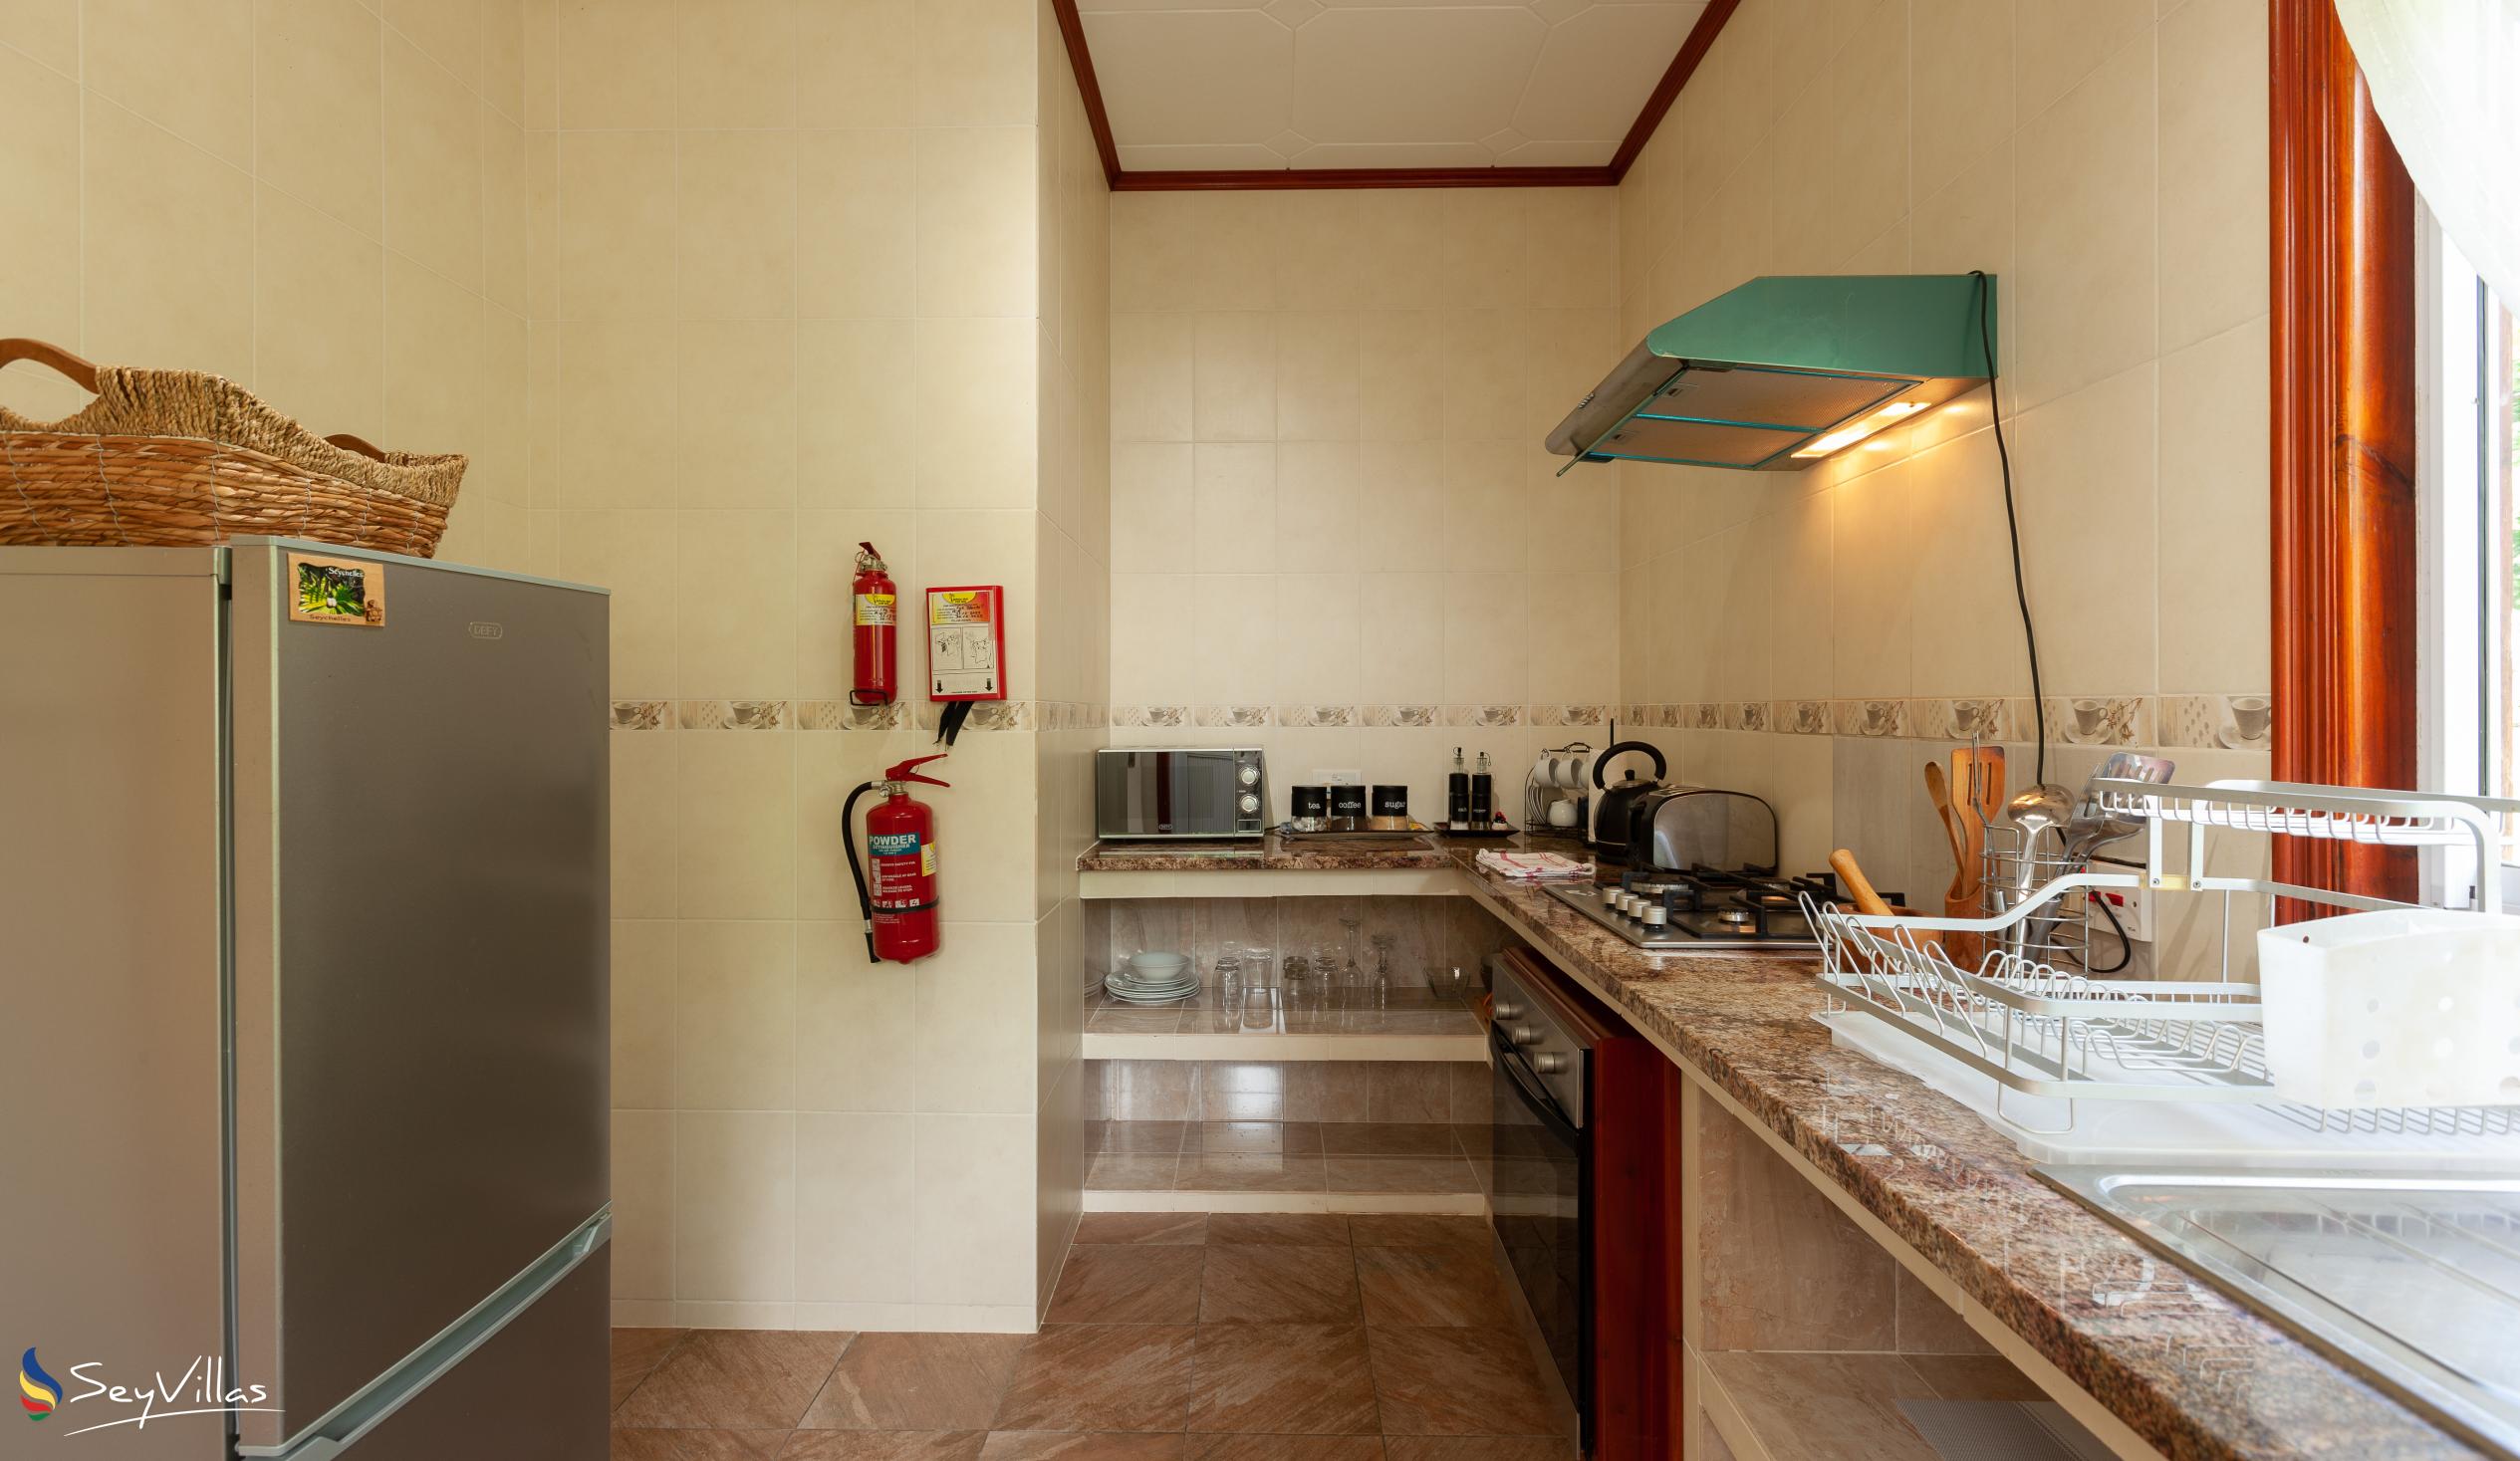 Foto 16: Badamier Self Catering - Appartamento Standard - La Digue (Seychelles)